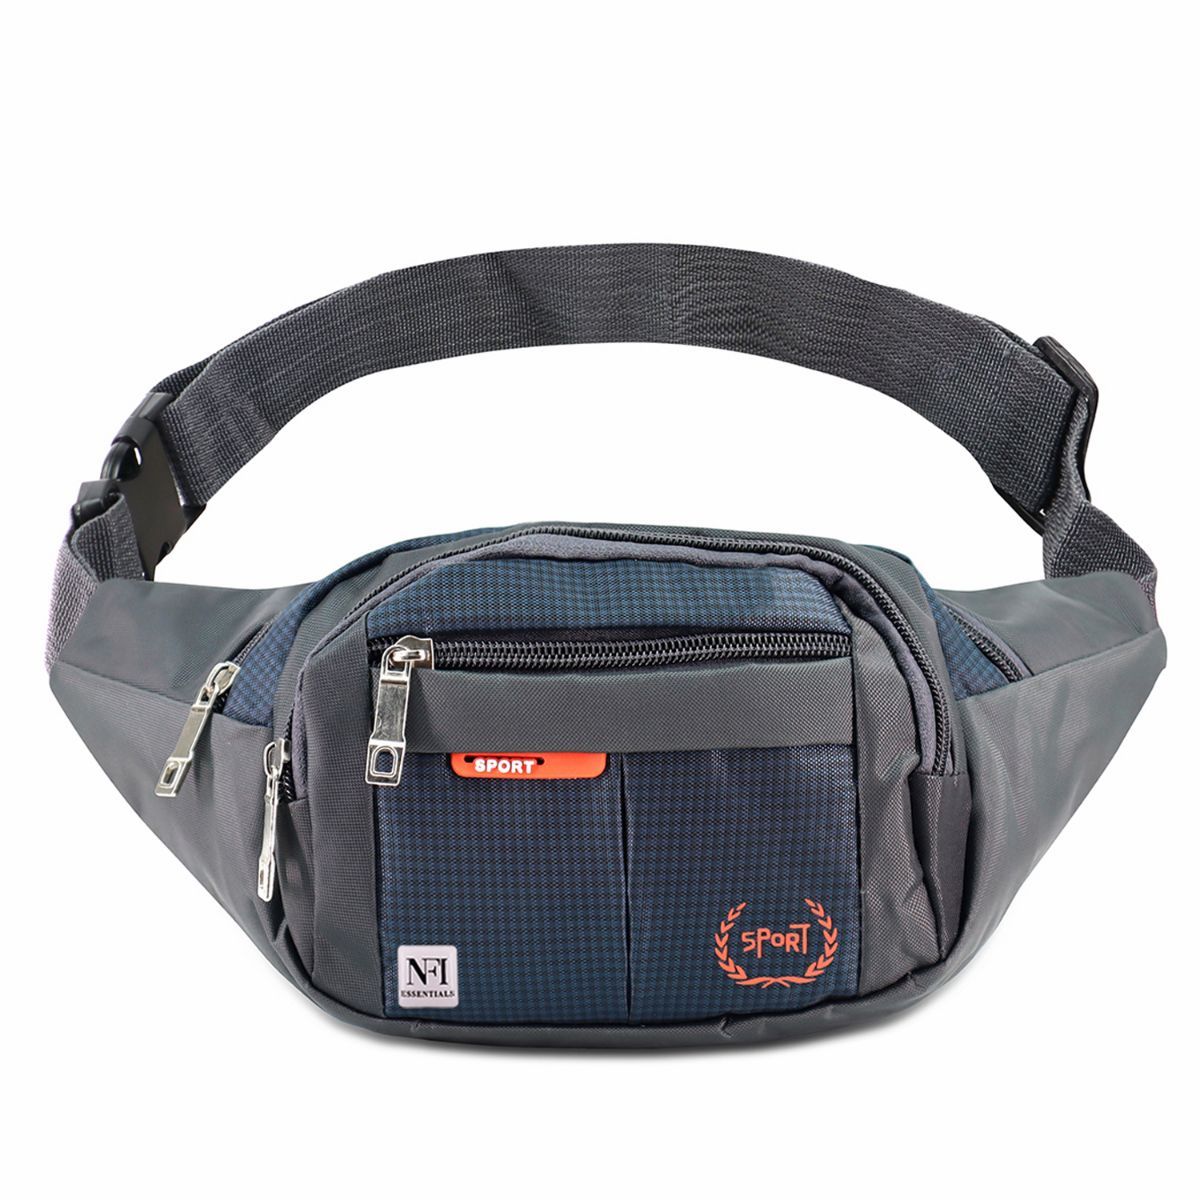 Buy NFI Essentials Waist Bag Travel Handy Hiking Zip Camera Pouch Money  Phone Belt Sport Bag - Navy Blue Online